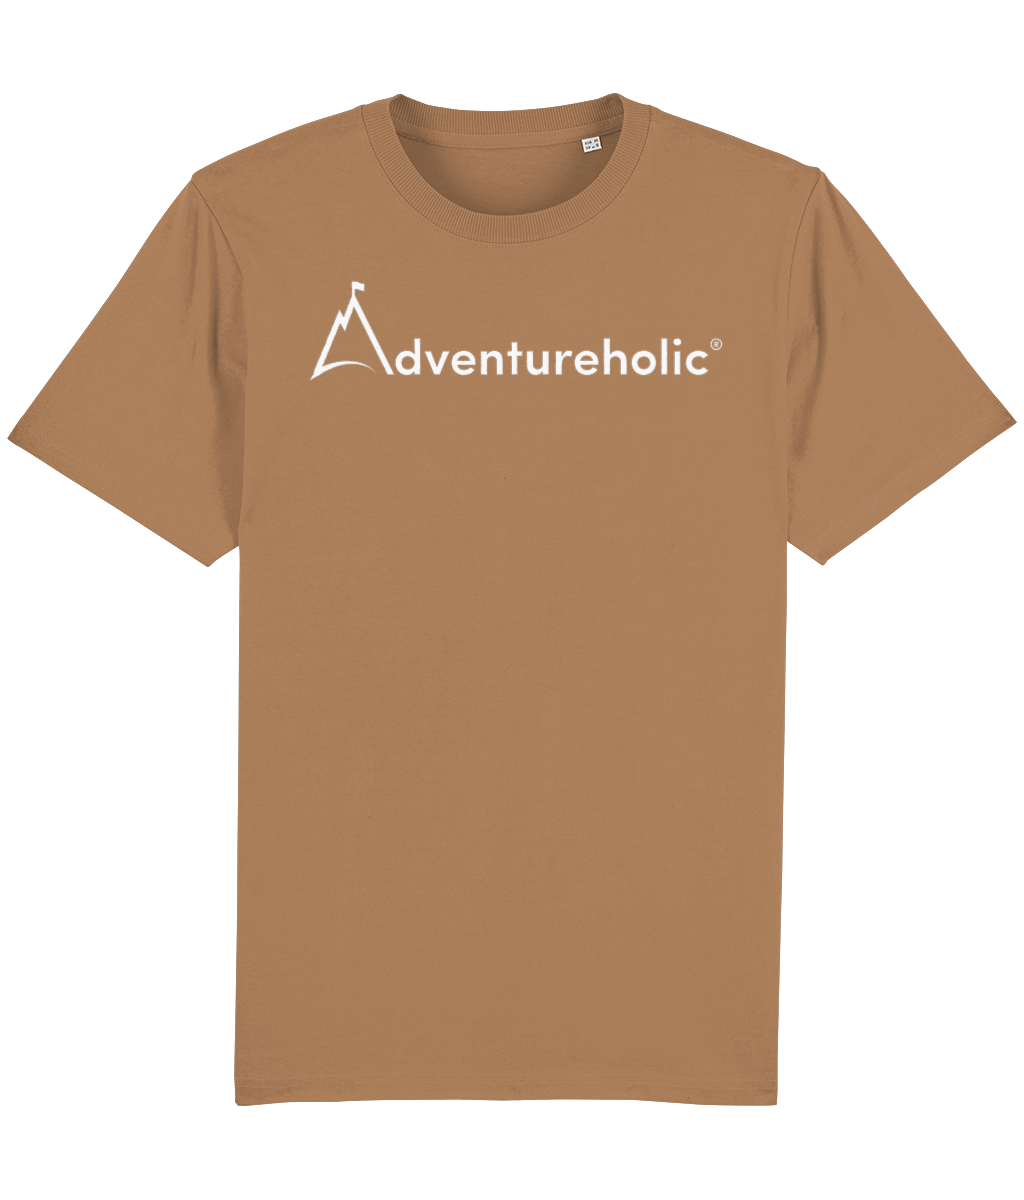 Adventureholic Unisex Tee-Shirt - White Print